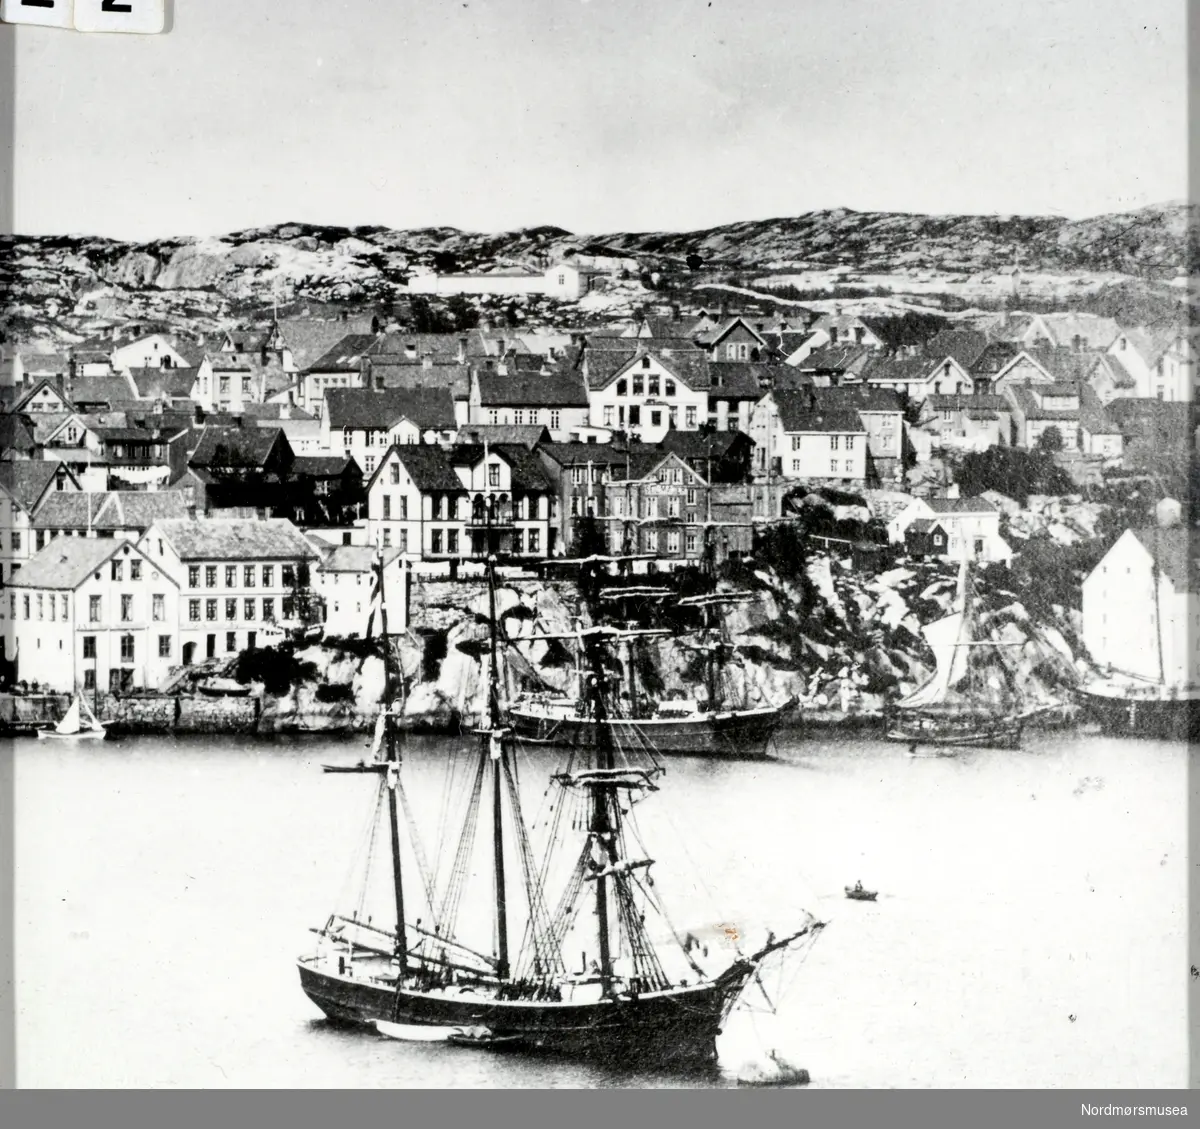 Bildet viser sansynligvis S/S " Ina" en skonnertbrigg på 252 registertonn fortøyd i "Storbøya" på havna i Kristiansund i 1885.
Bildet gir oss en fin oversikt om hvordan havnepartiet fra Kirkeallmenningen til omtrent der hvor Nordmørskafeen er i dag, var på den tiden. Vi ser at skutene ligger akterfortøyd ved Blixhammeren. Navnet på barken som ligger der er ikke kjent.
"Ina"s redere var N. R. Parelius og Albert Heyerdahl og fører var O. Tomelthy.
Skipet ble bygd i Genova i 1874.
Kildene forteller at hun var rundgattet og ikke videre pen, men sterk da den var bygd for kisfart. Seilte mest på Amerika og spesielt på Brasil. På Brasilkysten kom den ut for en kastevind som tok hele dokken, riggen og storstangen. Mannskapet fikk rigget nødrigg, og etter to uker greide de å komme seg tilbake til avseilingshavnen, som var Bahia. 
Her ble de liggende i fire måneder for reparasjon. Deretter gikk turen til London, hvor hun ankom den 15/7-1886. På den påfølgende turen over Atlanteren, under meget vanskelige og farlige forhold, berget de 10 mann fra en bark fra Rostock. Redningen ble utført av styrmann Alnæs sammen med tre matroser. Barken sank tre timer etter at man hadde fått de skipbrudne ombord i S/S "Ina". Skuta seilte inn til Falmouth med de overlevende. 
Korte glimt av "Ina"s seilingsliste viser at hun ankom Arkhangelsk den 24/7-1885 og gikk derfra den 12/8 til Davenport. Fra Trinidad gikk hun den 8/2-1887 til Falmouth. Kapteinen var O. Tomelthy.
Det fremgår, som kildene sier, at hun var noe rundgattet, men man har vanskelig med å si seg enig i at hun ikke var pen.
S/S " Ina" ble i 1887 solgt til Porsgrunn.                                                                                 Kilde : Kristiansund på de 7 hav av Kjell Dønheim.                                                                   Se FAKf-100296.187028    (KMb-1987-005.3763)                                                                    Se FAKf-100296.187121    (KMb-1987-005.3854)                                                                        Se FAKf-100296.187127    (KMb-1987-005.3860)                                                                     Se FAKf-100296.198996    (KMb-1987-005.0428)                                                                                                                                                            Se FAKf-100296.201075    (KMb- 1992-030.0020)                                                                     Se FAKf-100296.214272    (KMb-1946-000.0859)                                                                                 Se FAKf-100296.220923    (KMb-1987-005.5884)
(Info: Peter Storvik). -- Foto fra havnebassenget i Kristiansund og bebyggelsen på Kirklandet. Bakerst i bildet sees barkskipet "Ina" fortøyd ved Blixhammeren. Skipet i front er ikke kjent.  Bildet er trolig fra perioden 1880 til 1900. Fotograf er ukjent. Fra Nordmøre Museums fotosamlinger.